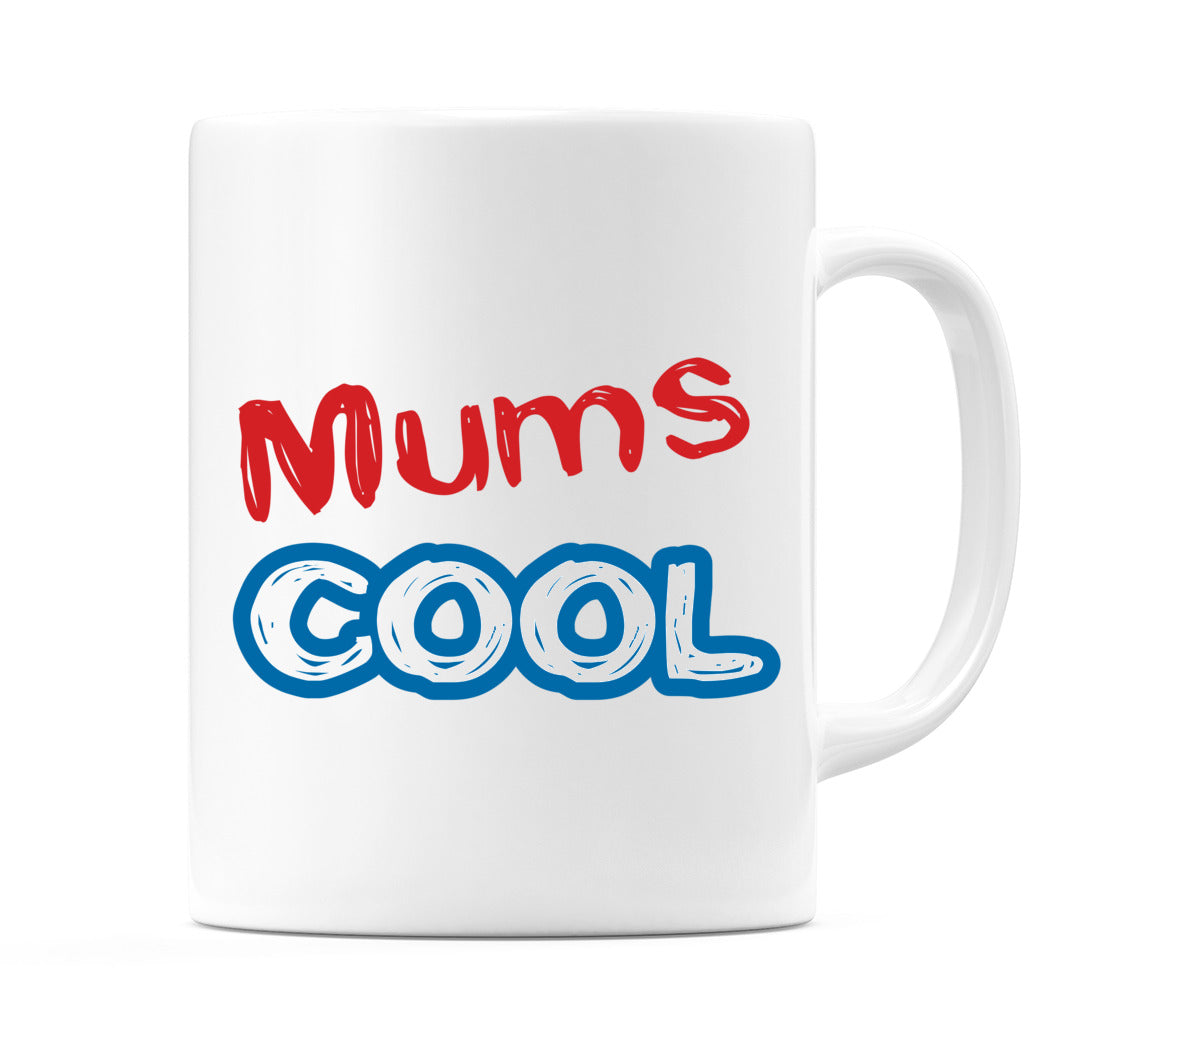 Mums Cool Mug